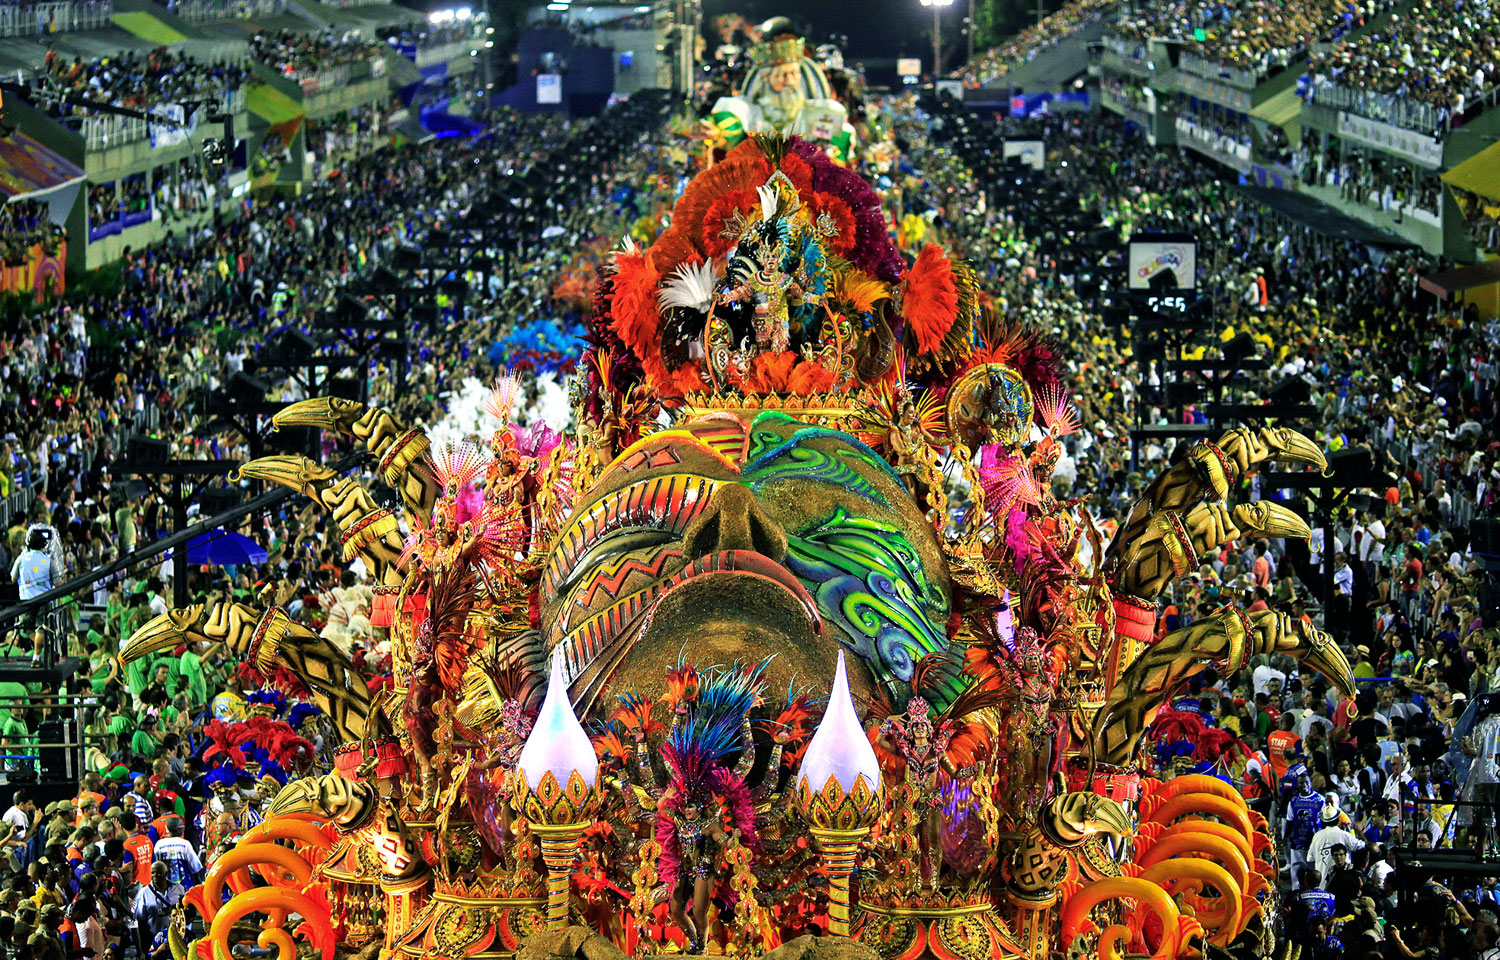 A Kolibri szambaiskola parádéja a riói karneválon